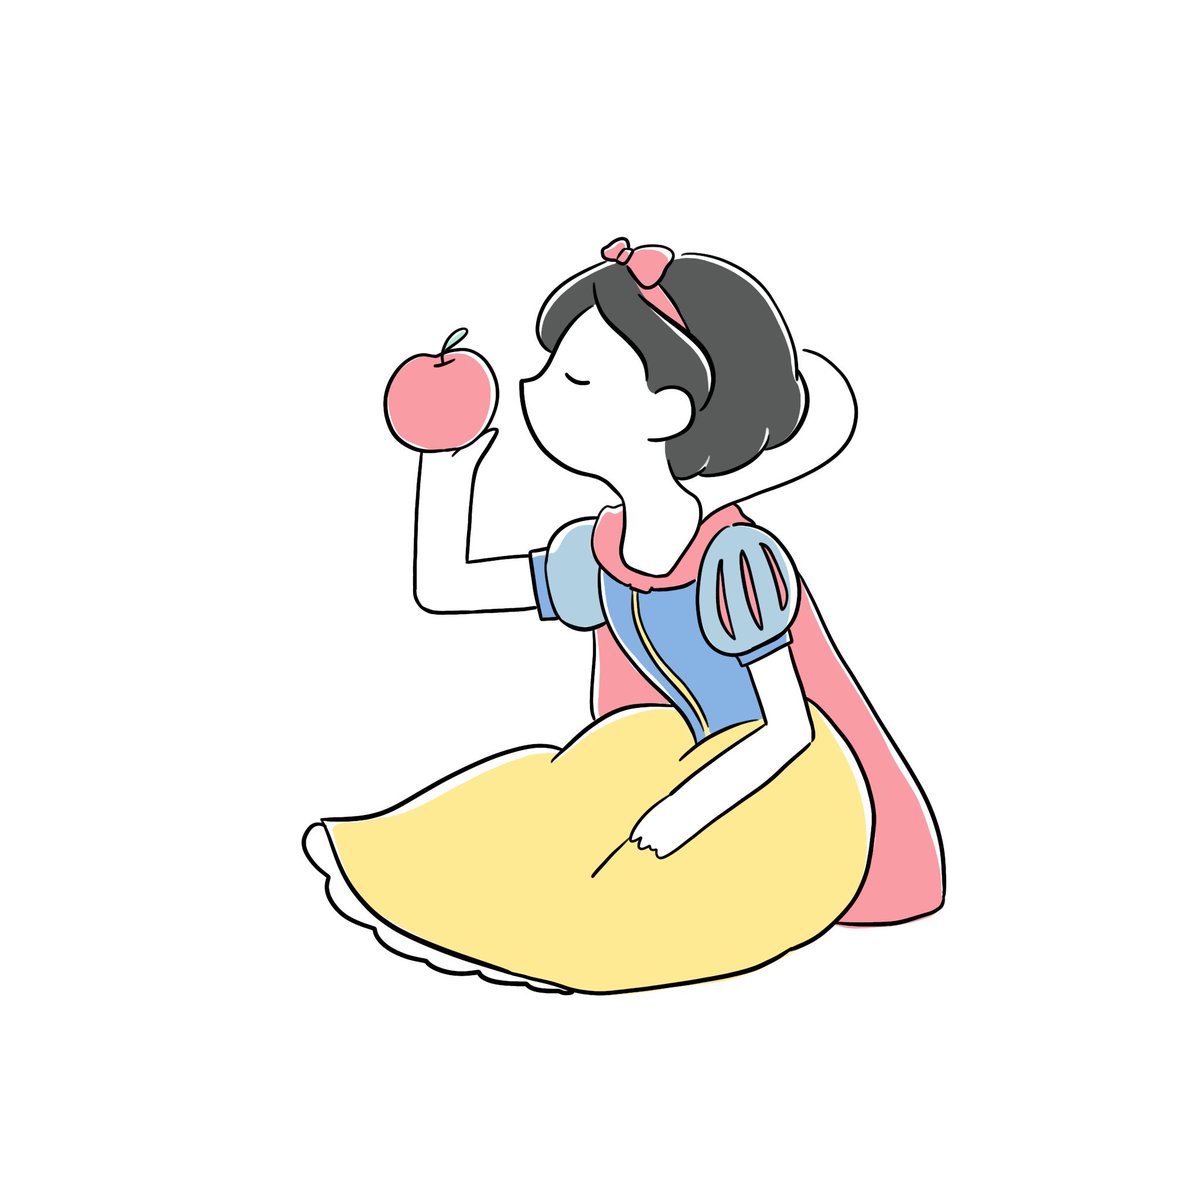 勿 Mochi 白雪姫の綺麗な服着てるのに躊躇いもなく地面に座る所が好きです イラスト Illust T Co 8n6gwjcecs Twitter